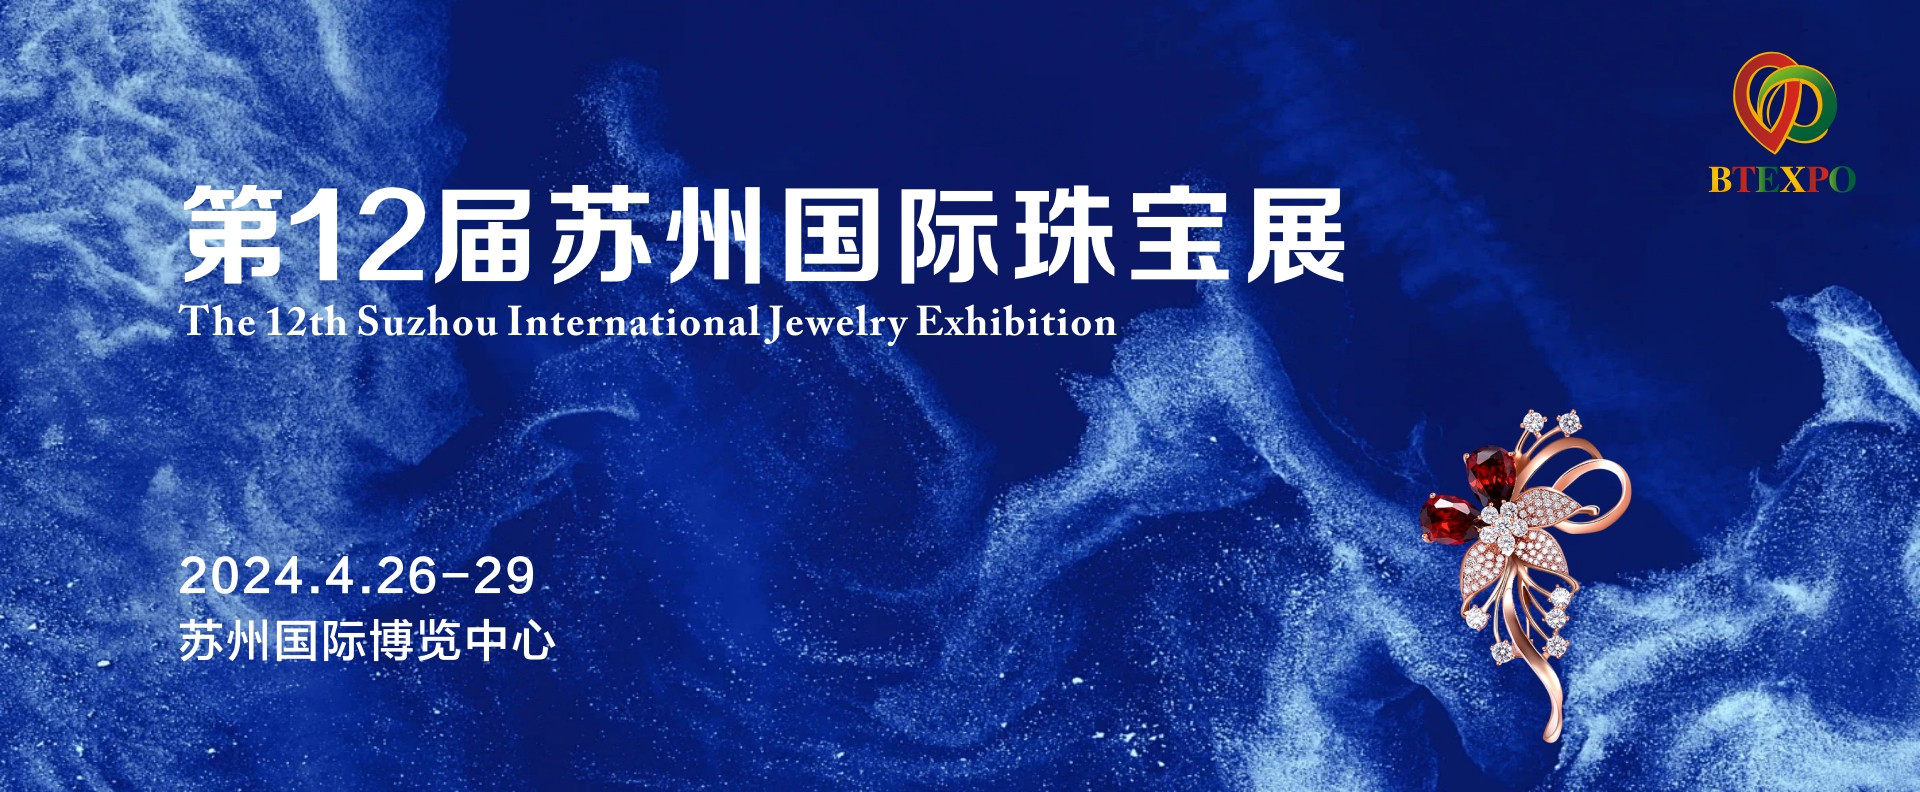 仅限时免费开放四天！苏州国际珠宝大展即将开幕！